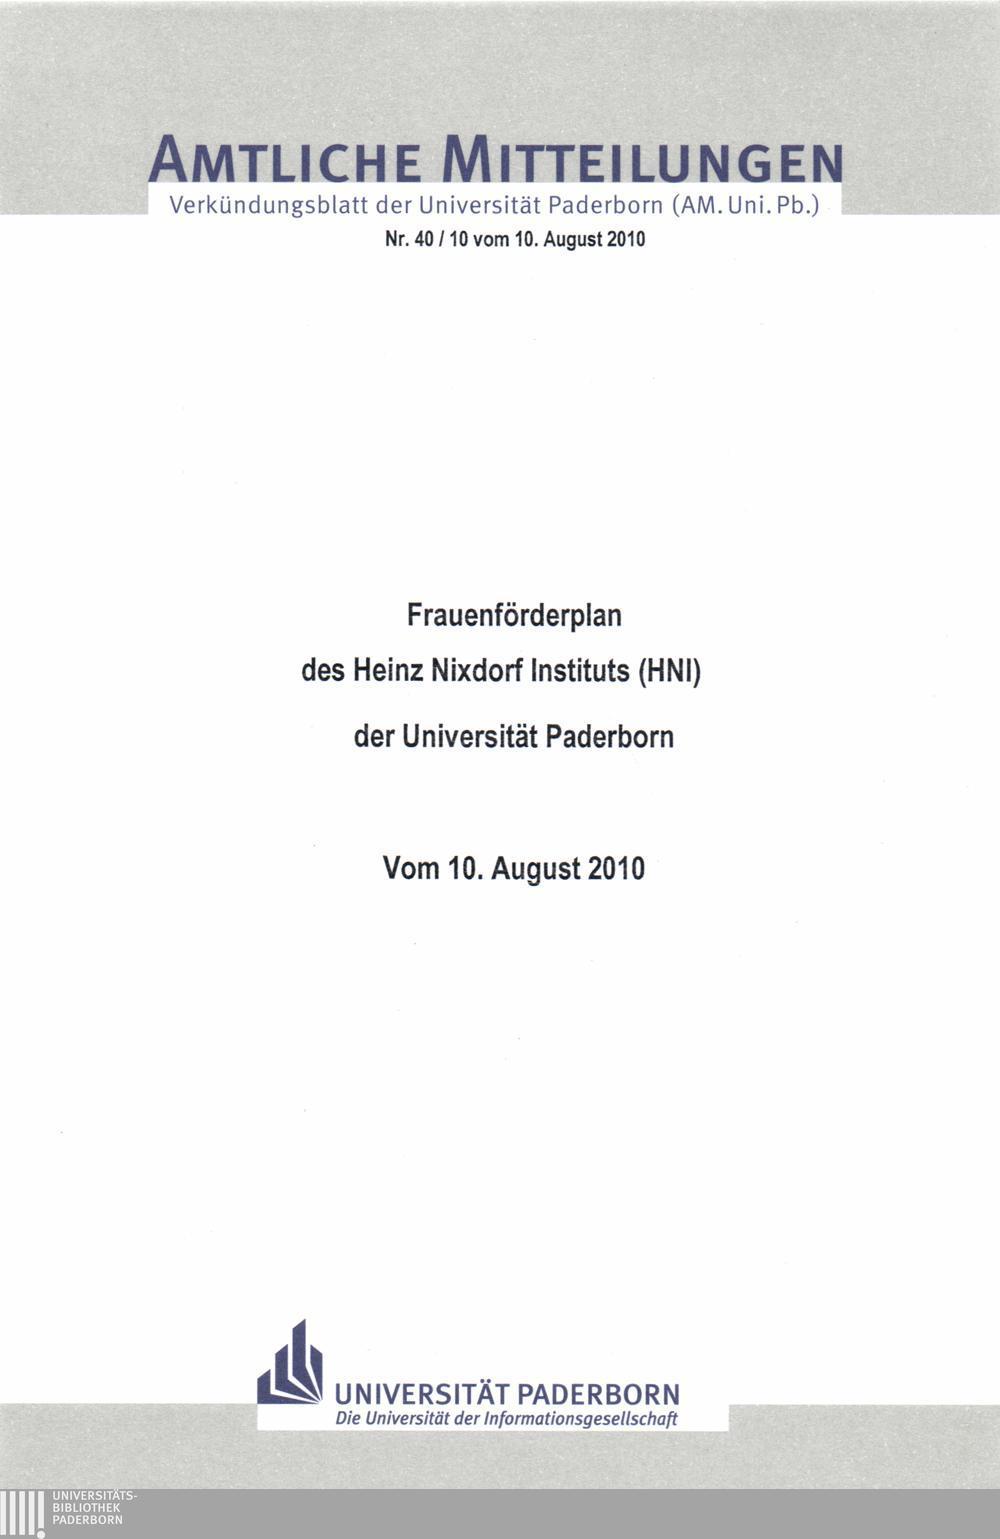 Amtliche Verkündungsblatt Mitteilungen der Universität Paderborn (AM. Uni. Pb.) Nr. 40 /10 vom 10.